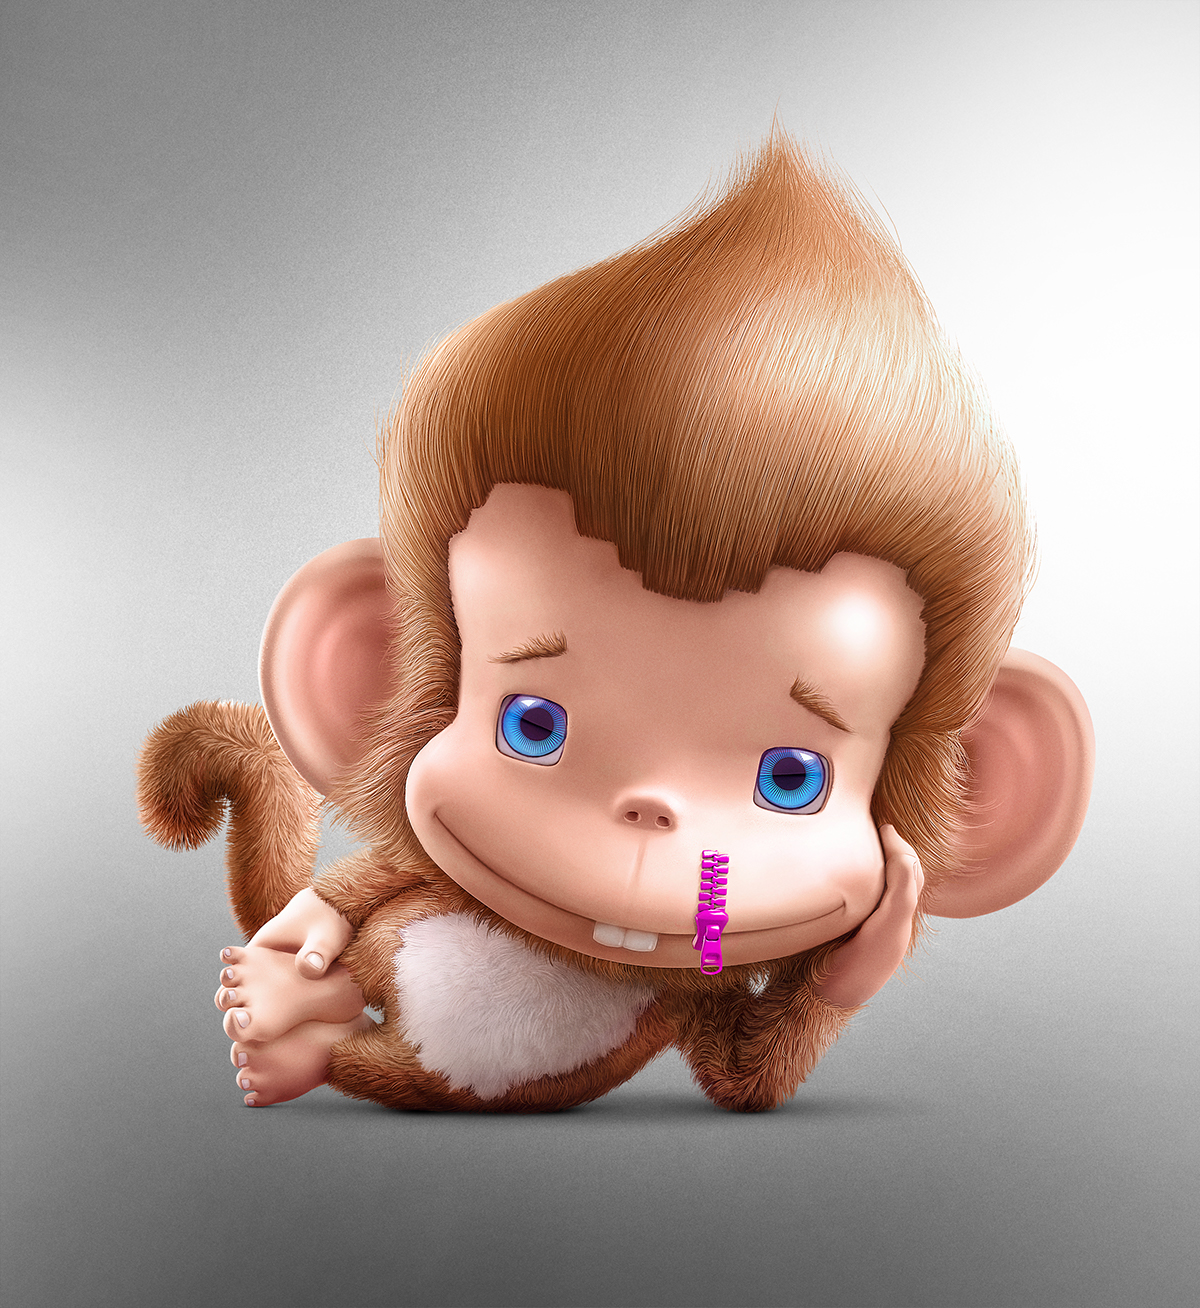 monkey fabio vido operação sorriso Macaco macaquinho lábio leporino